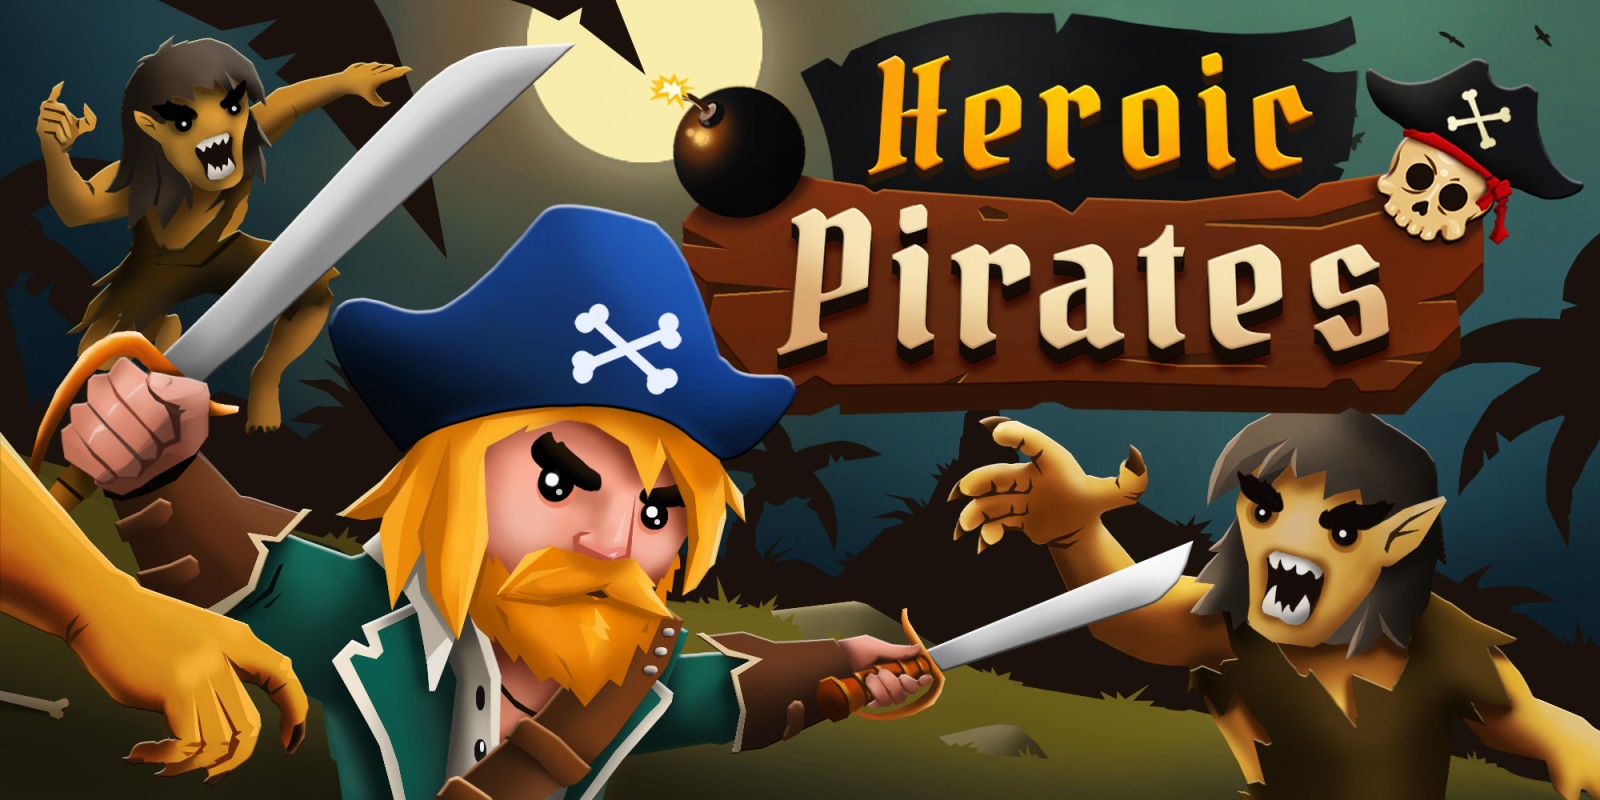 Heroic Pirates